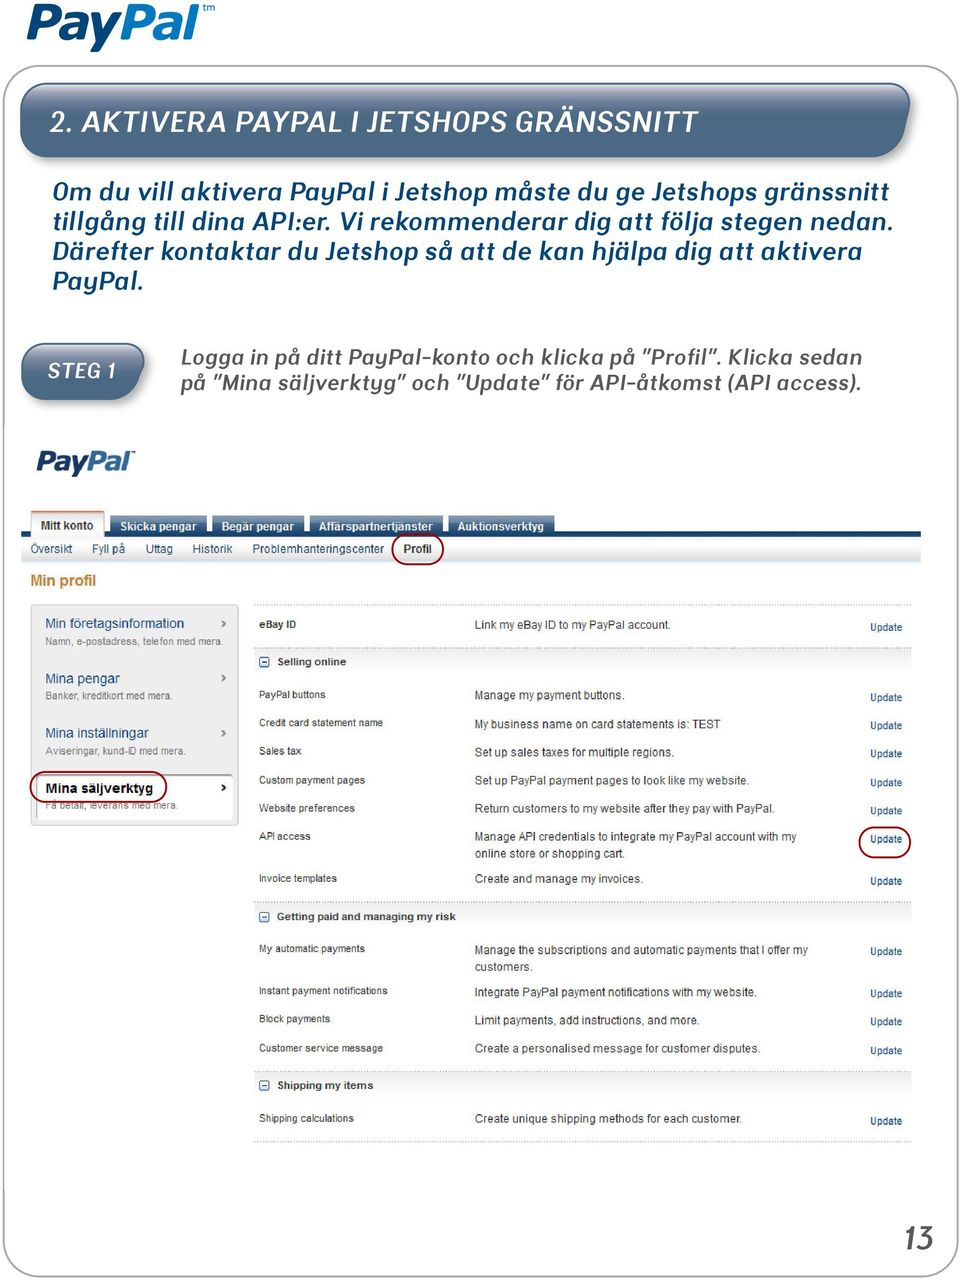 Därefter kontaktar du Jetshop så att de kan hjälpa dig att aktivera PayPal.